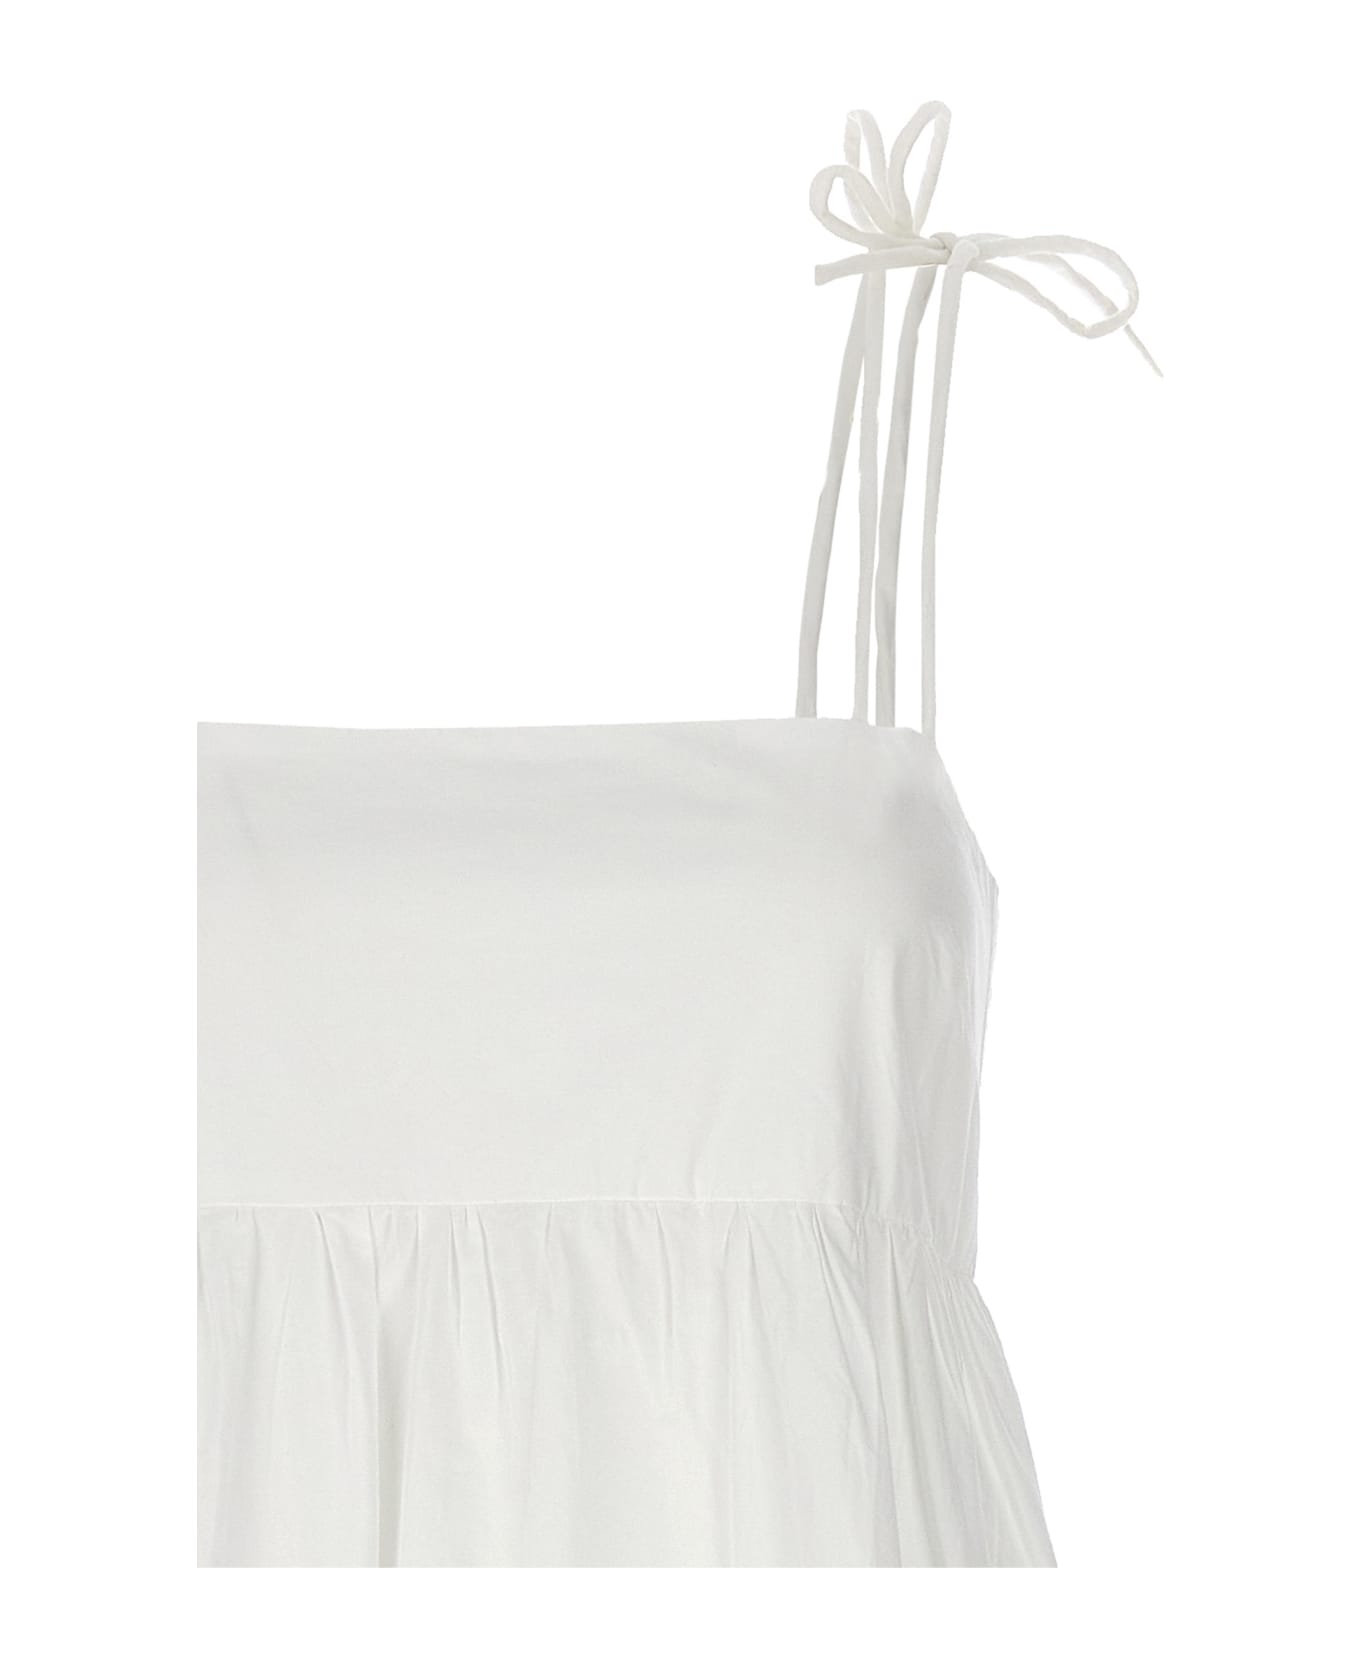 Ganni Bow Midi Dress - White